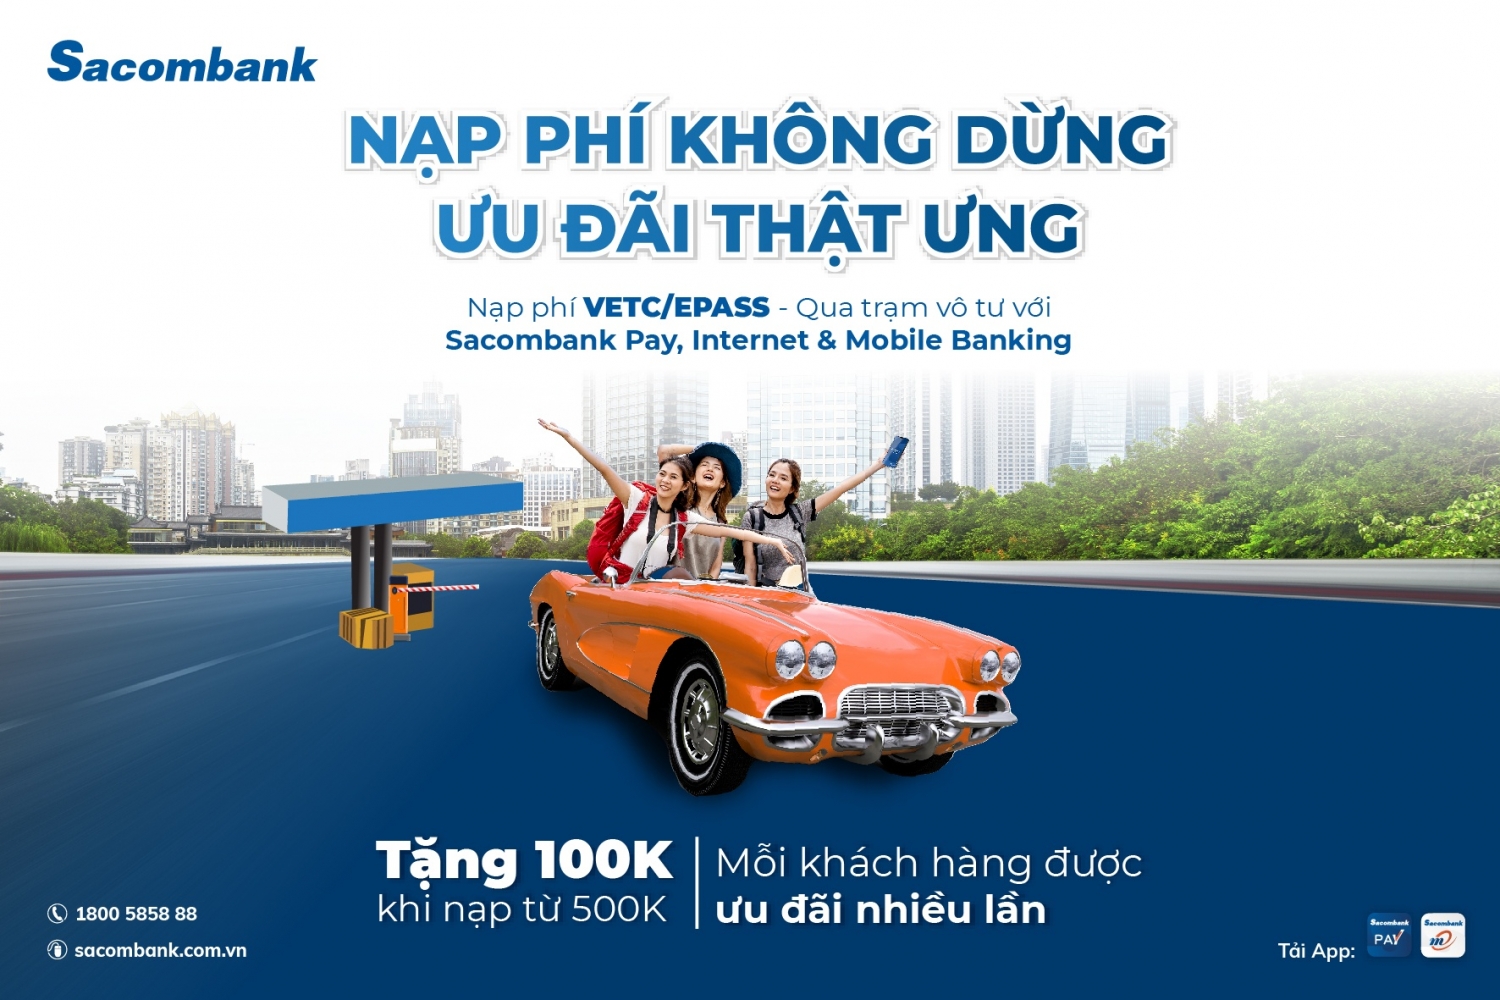 Tin ngân hàng ngày 2/9: Khách hàng an tâm giao dịch xuyên lễ cùng Nam A Bank